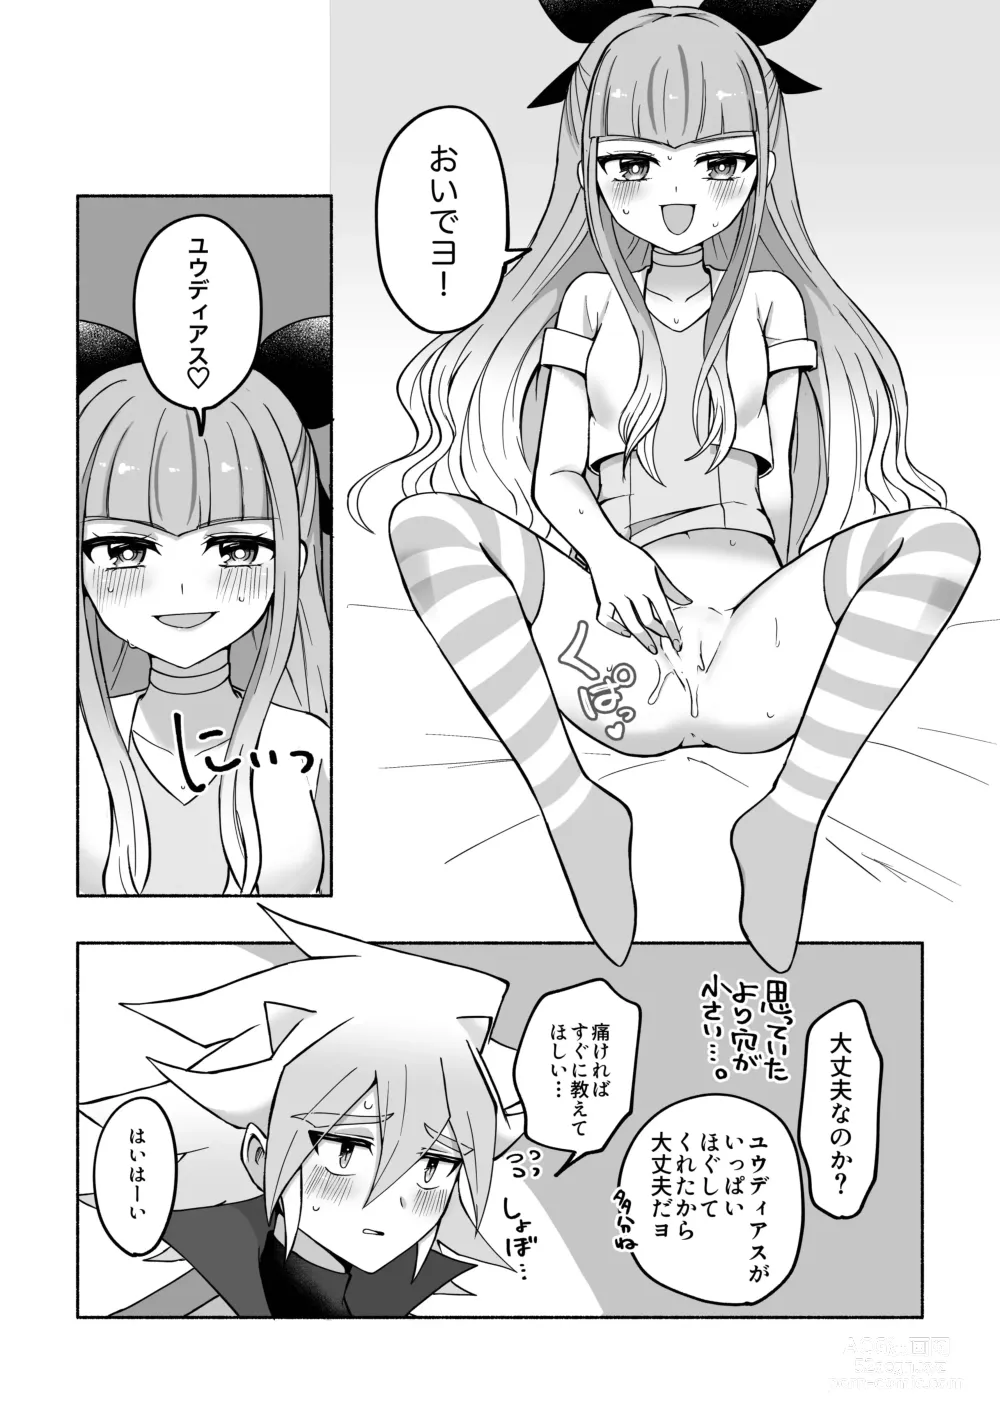 Page 7 of doujinshi Yudi yu a manga